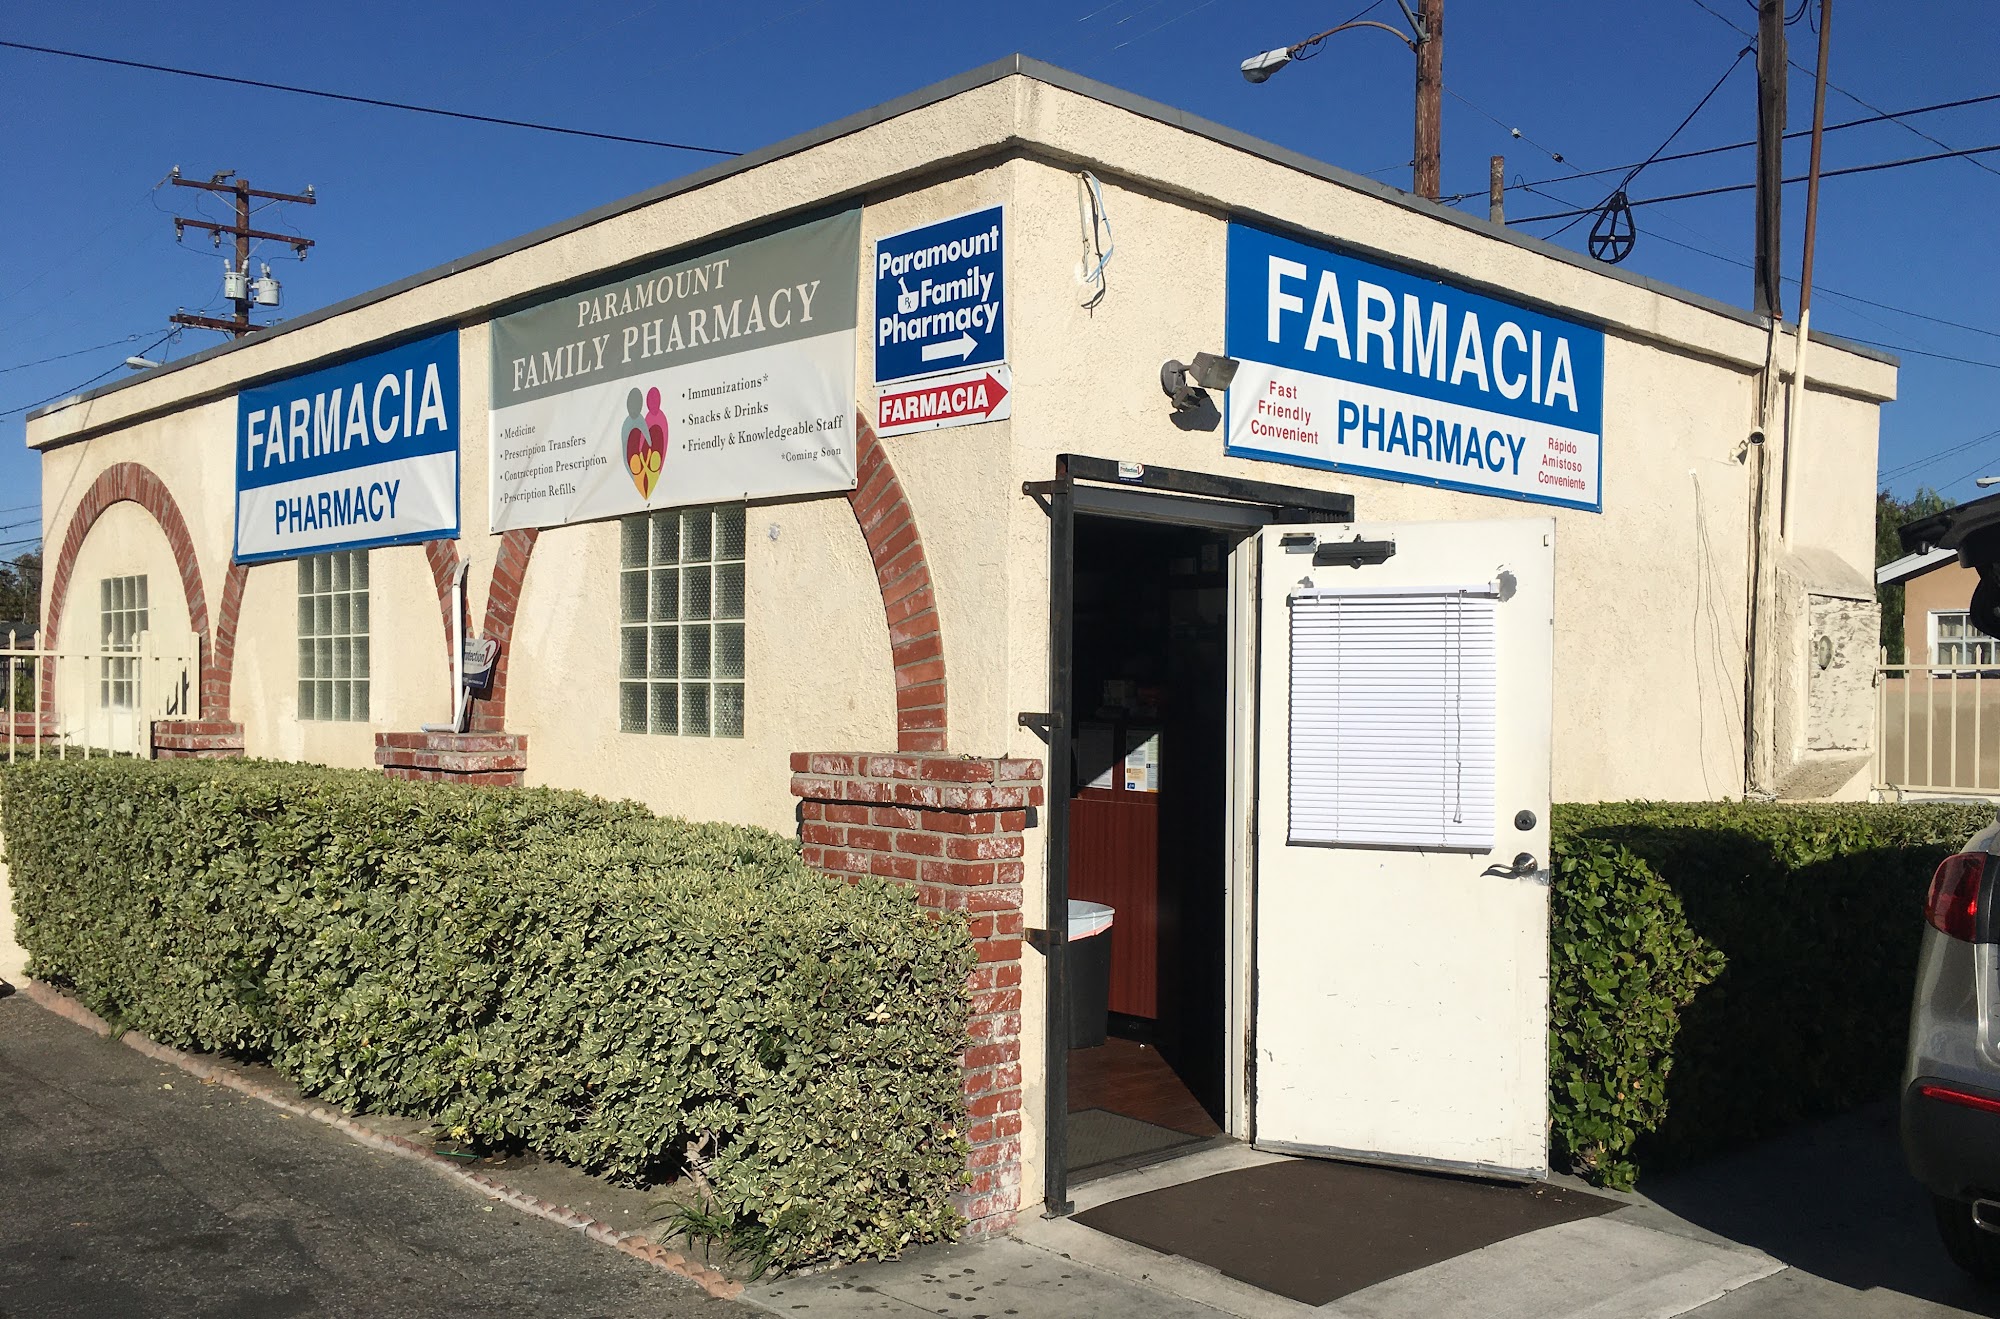 Paramount Family Pharmacy